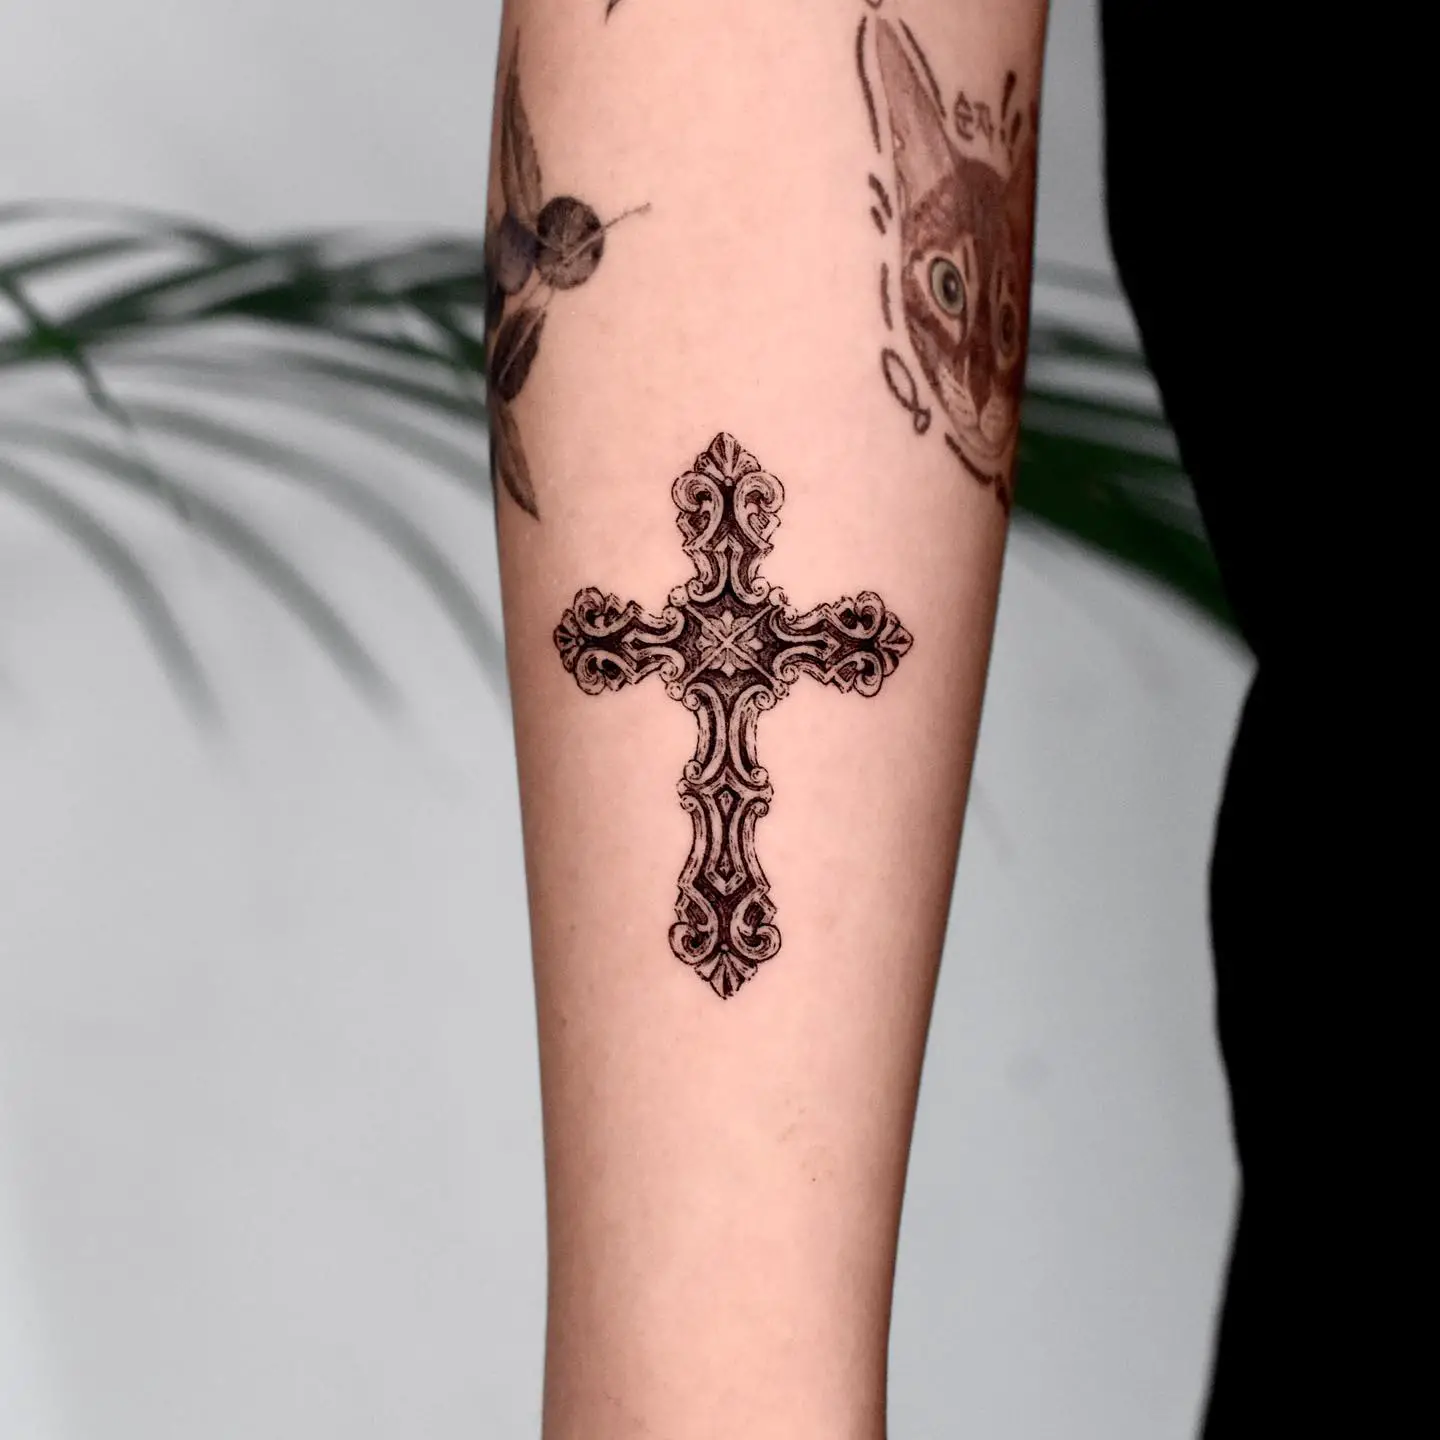 Cross tattoo design by mooi tattoo